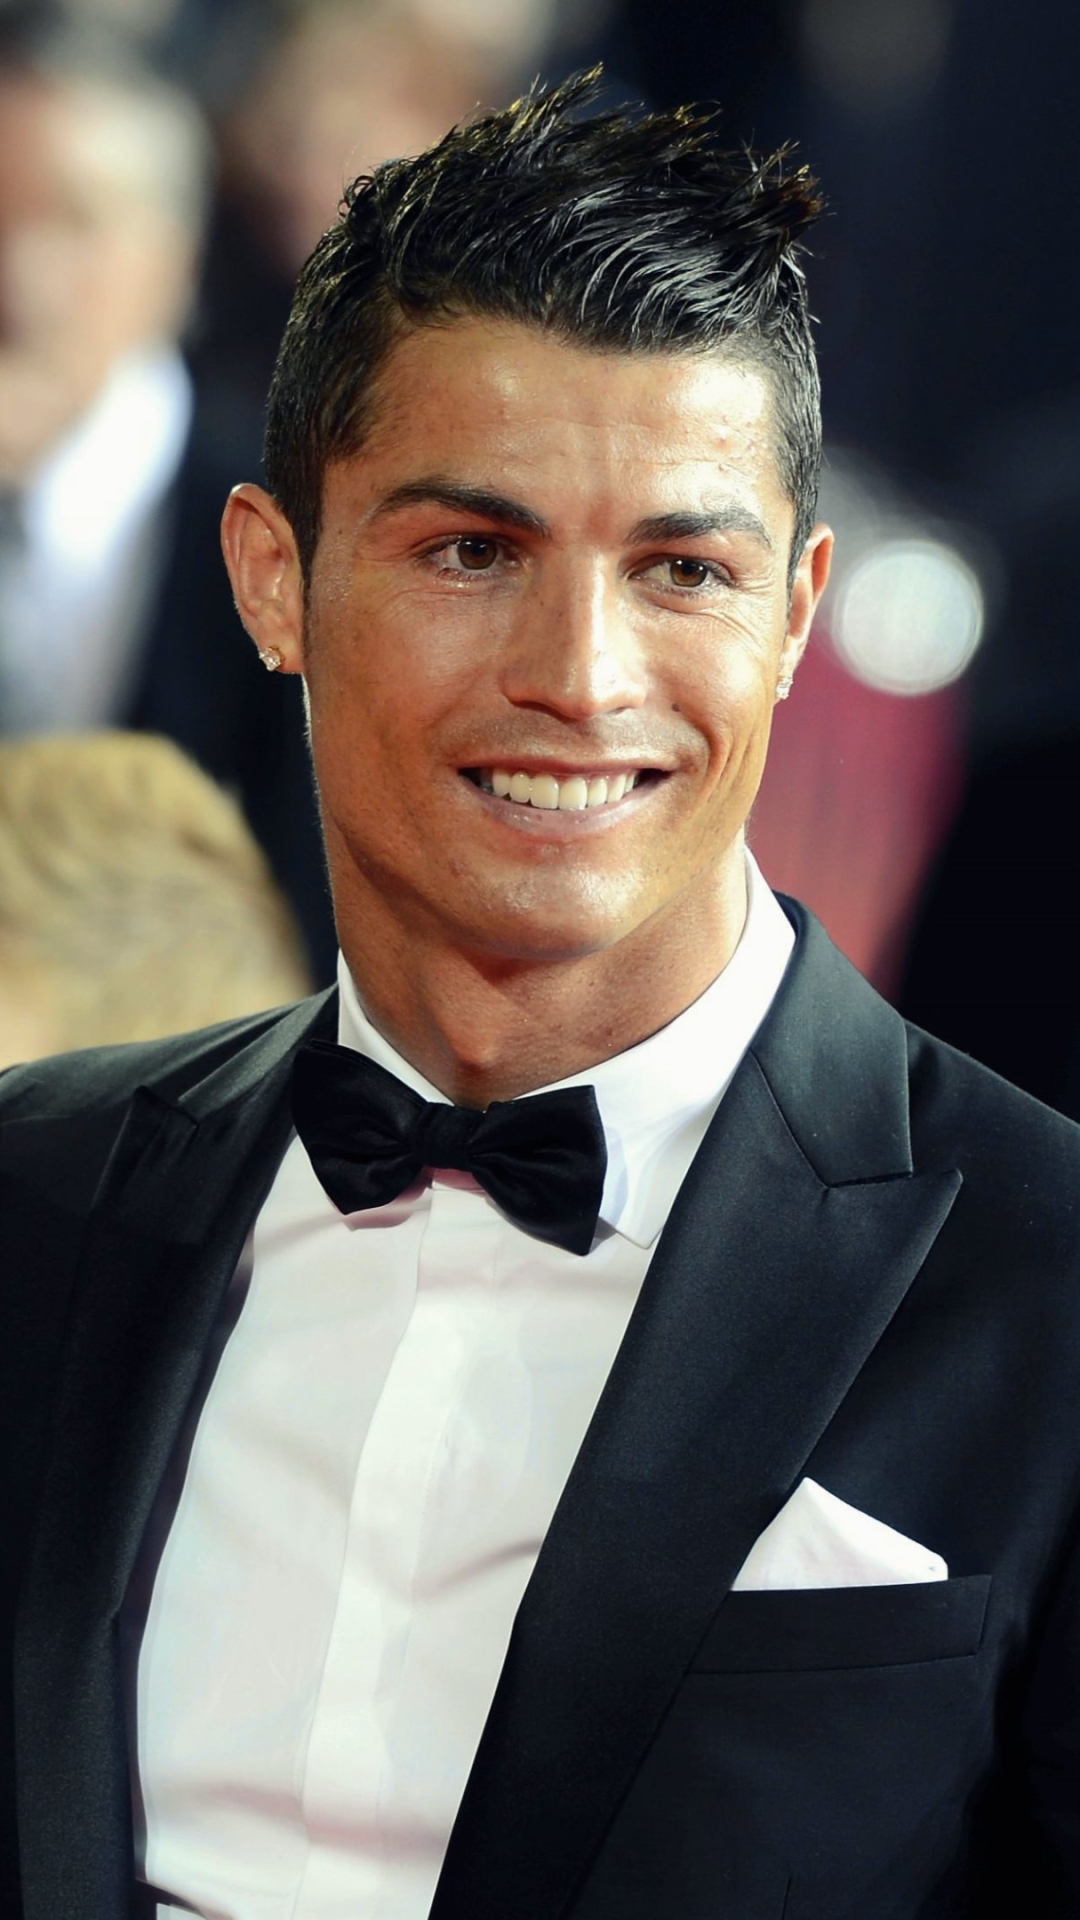 Descarga gratuita de fondo de pantalla para móvil de Fútbol, Cristiano Ronaldo, Deporte.